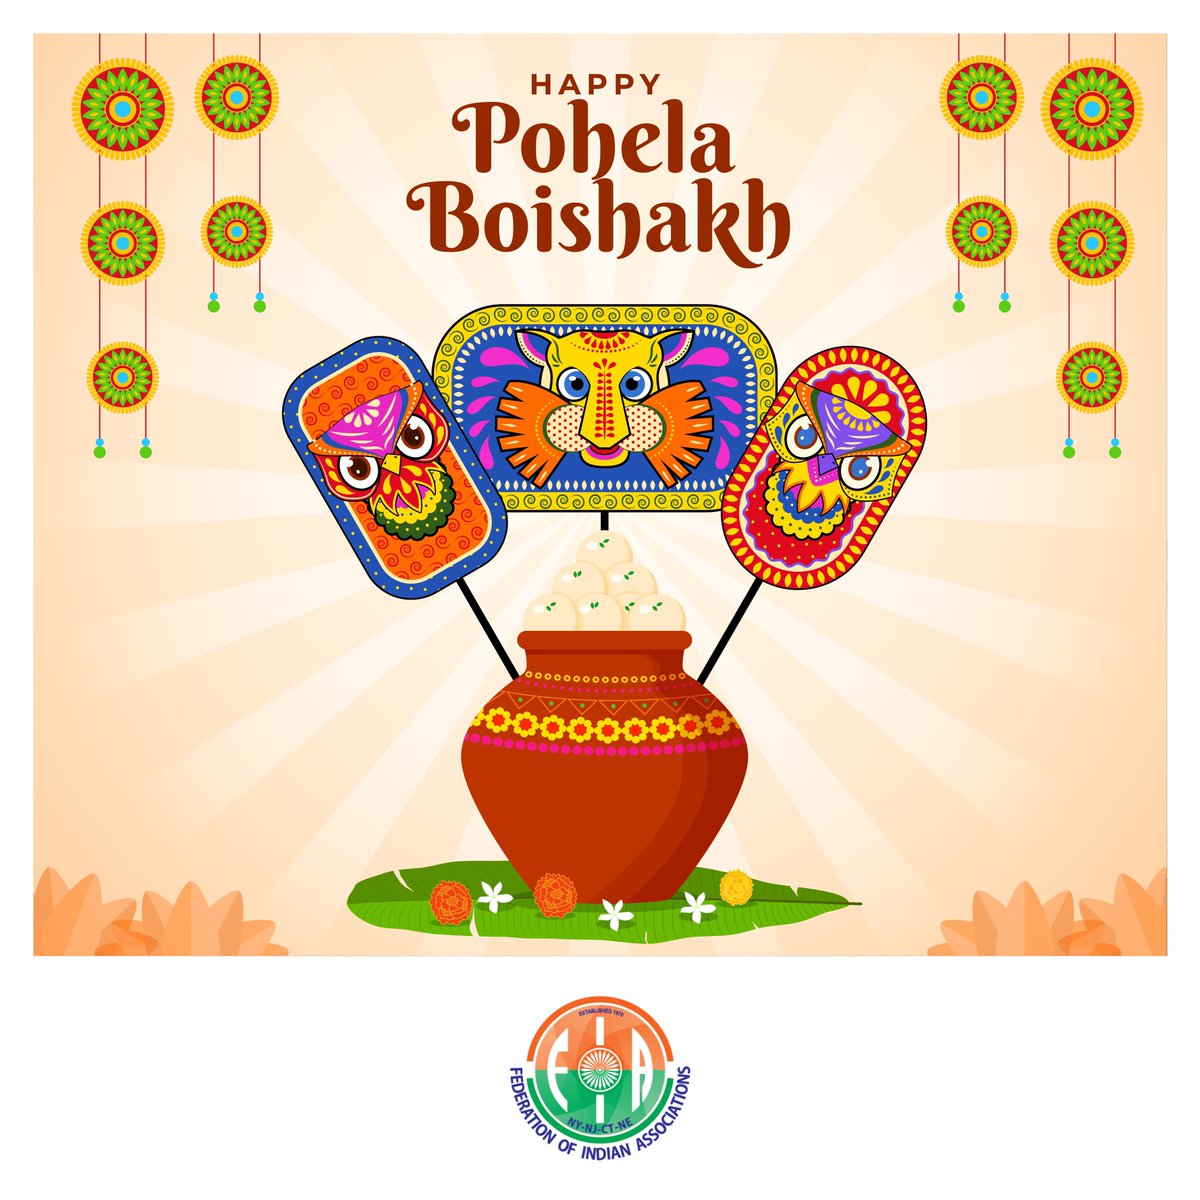 On this auspicious occasion, may you be blessed with good health, wealth, and happiness. Shubho Noboborsho! Happy Pohela Boishakh 🙏🏻 #PohelaBoishak #BengaliNewYear #ShubhoNoboborsho #PoilaBaisakh